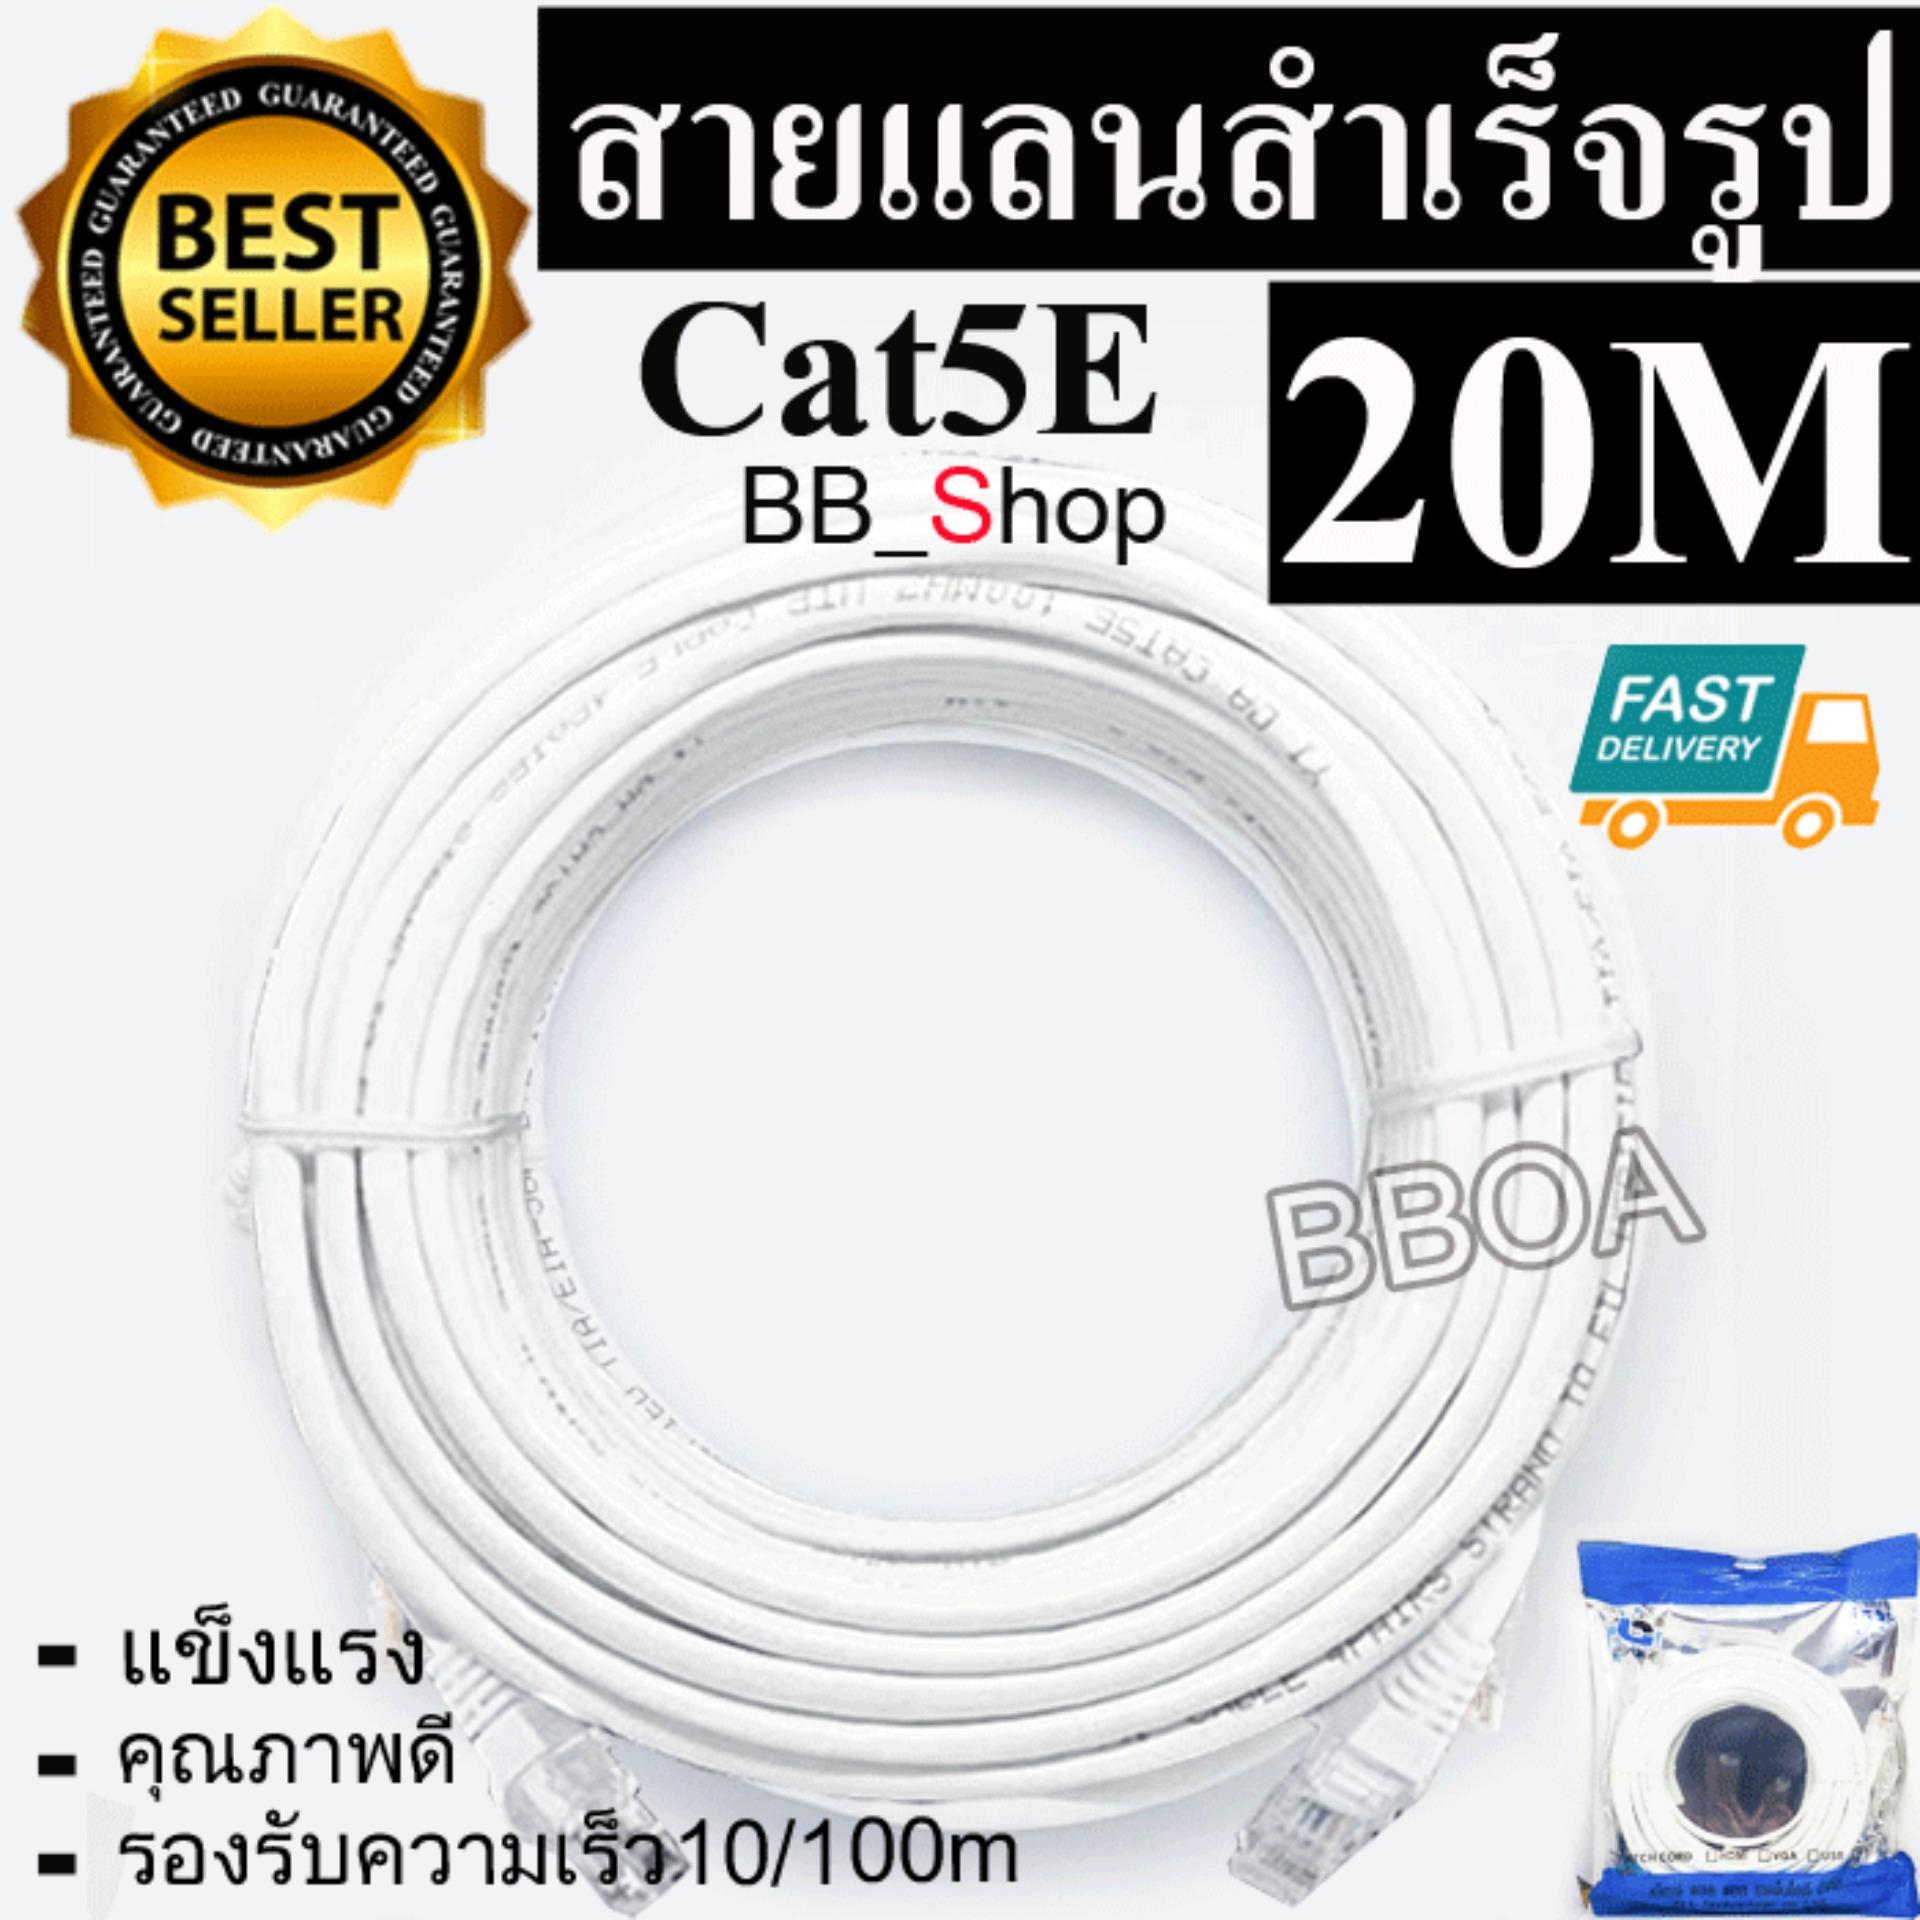 BB Link Cable Lan CAT5E 20m สายแลน เข้าหัวสำเร็จรูป 20เมตร (สีขาว)